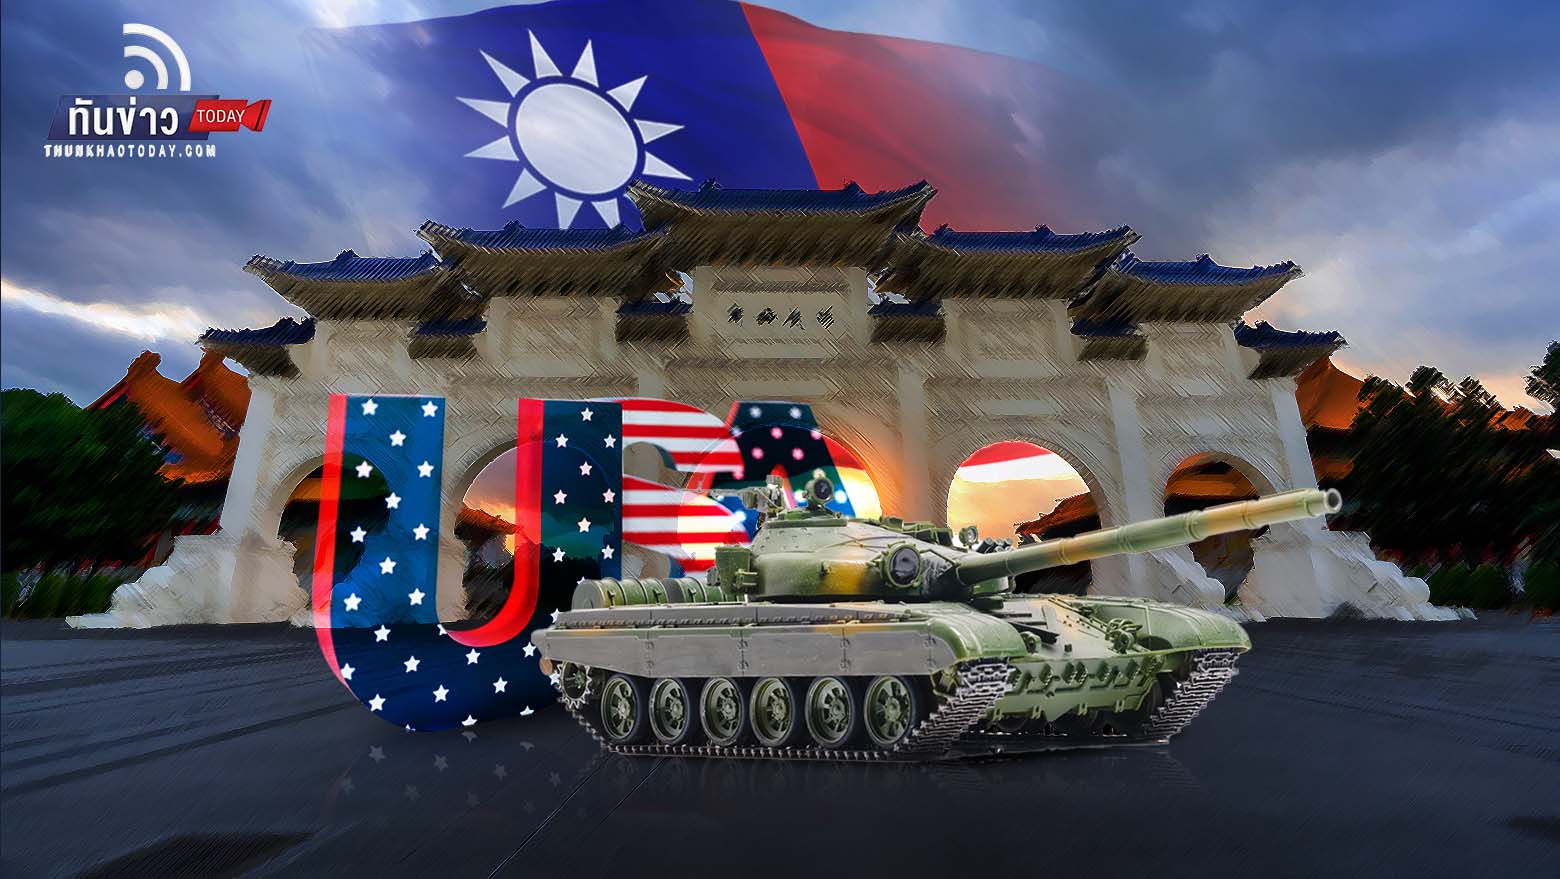 ไต้หวันไม่กลัวจีน เผยสหรัฐฯ พร้อมหนุนอาวุธ ด้านนักลงทุน หวั่นความขัดแย้งใกล้ถึงจุดอันตราย